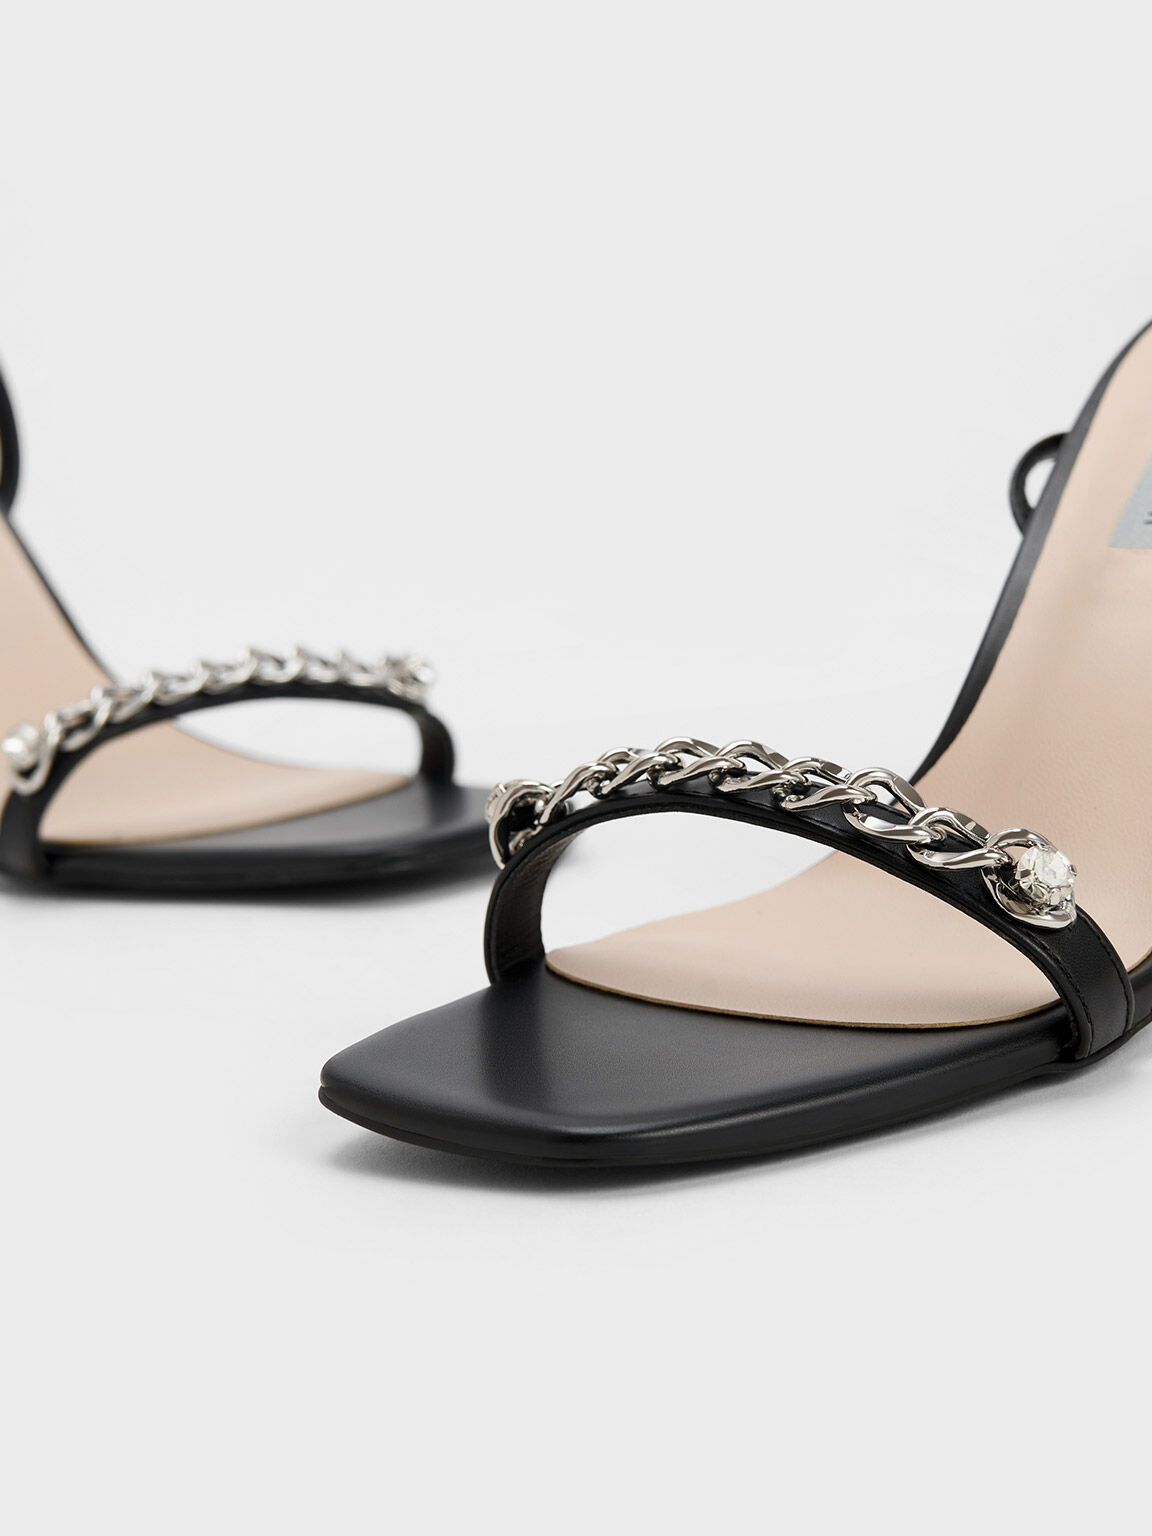 Sandal Ankle Strap Chain-Embellished, Black, hi-res